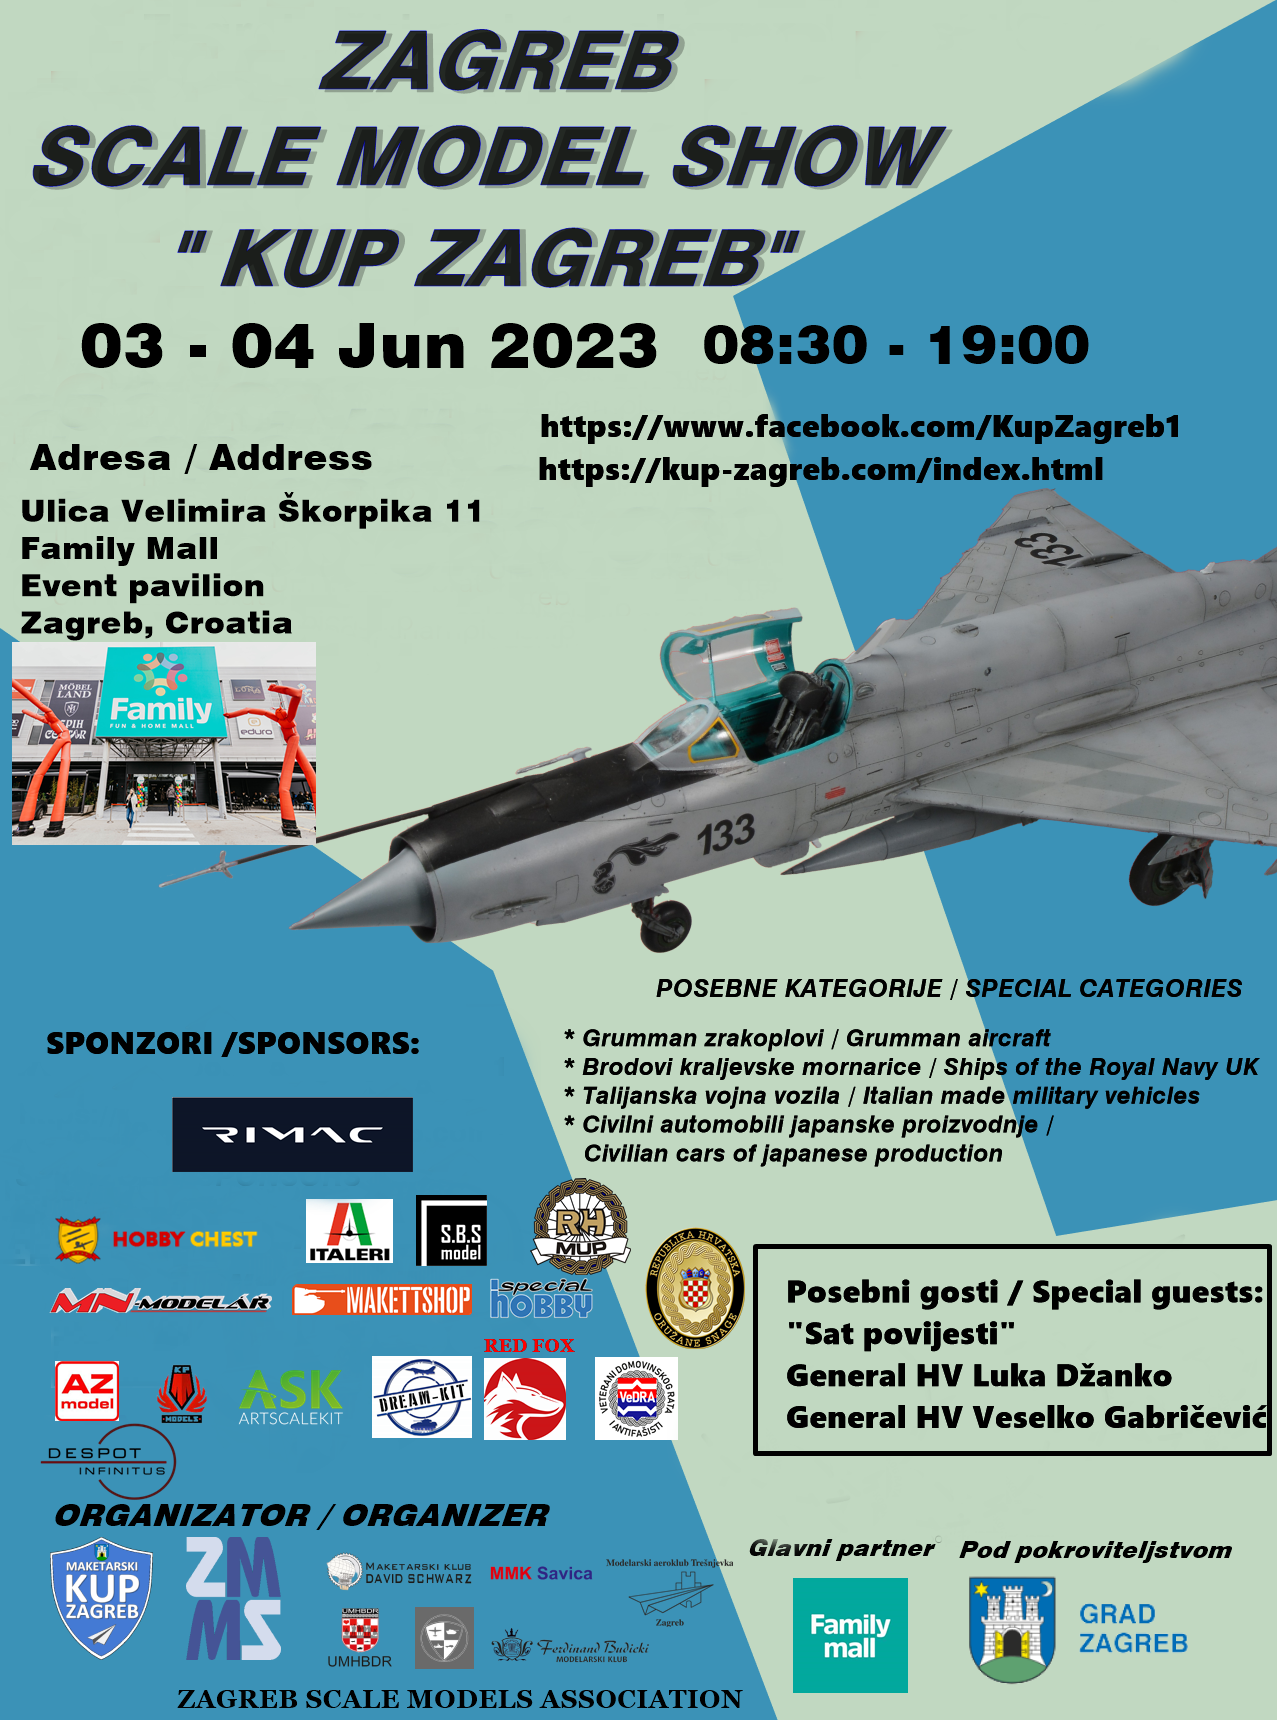 Předobjednávky na soutěž Zagreb Scale Model Show „Kup Zagreb” 2023